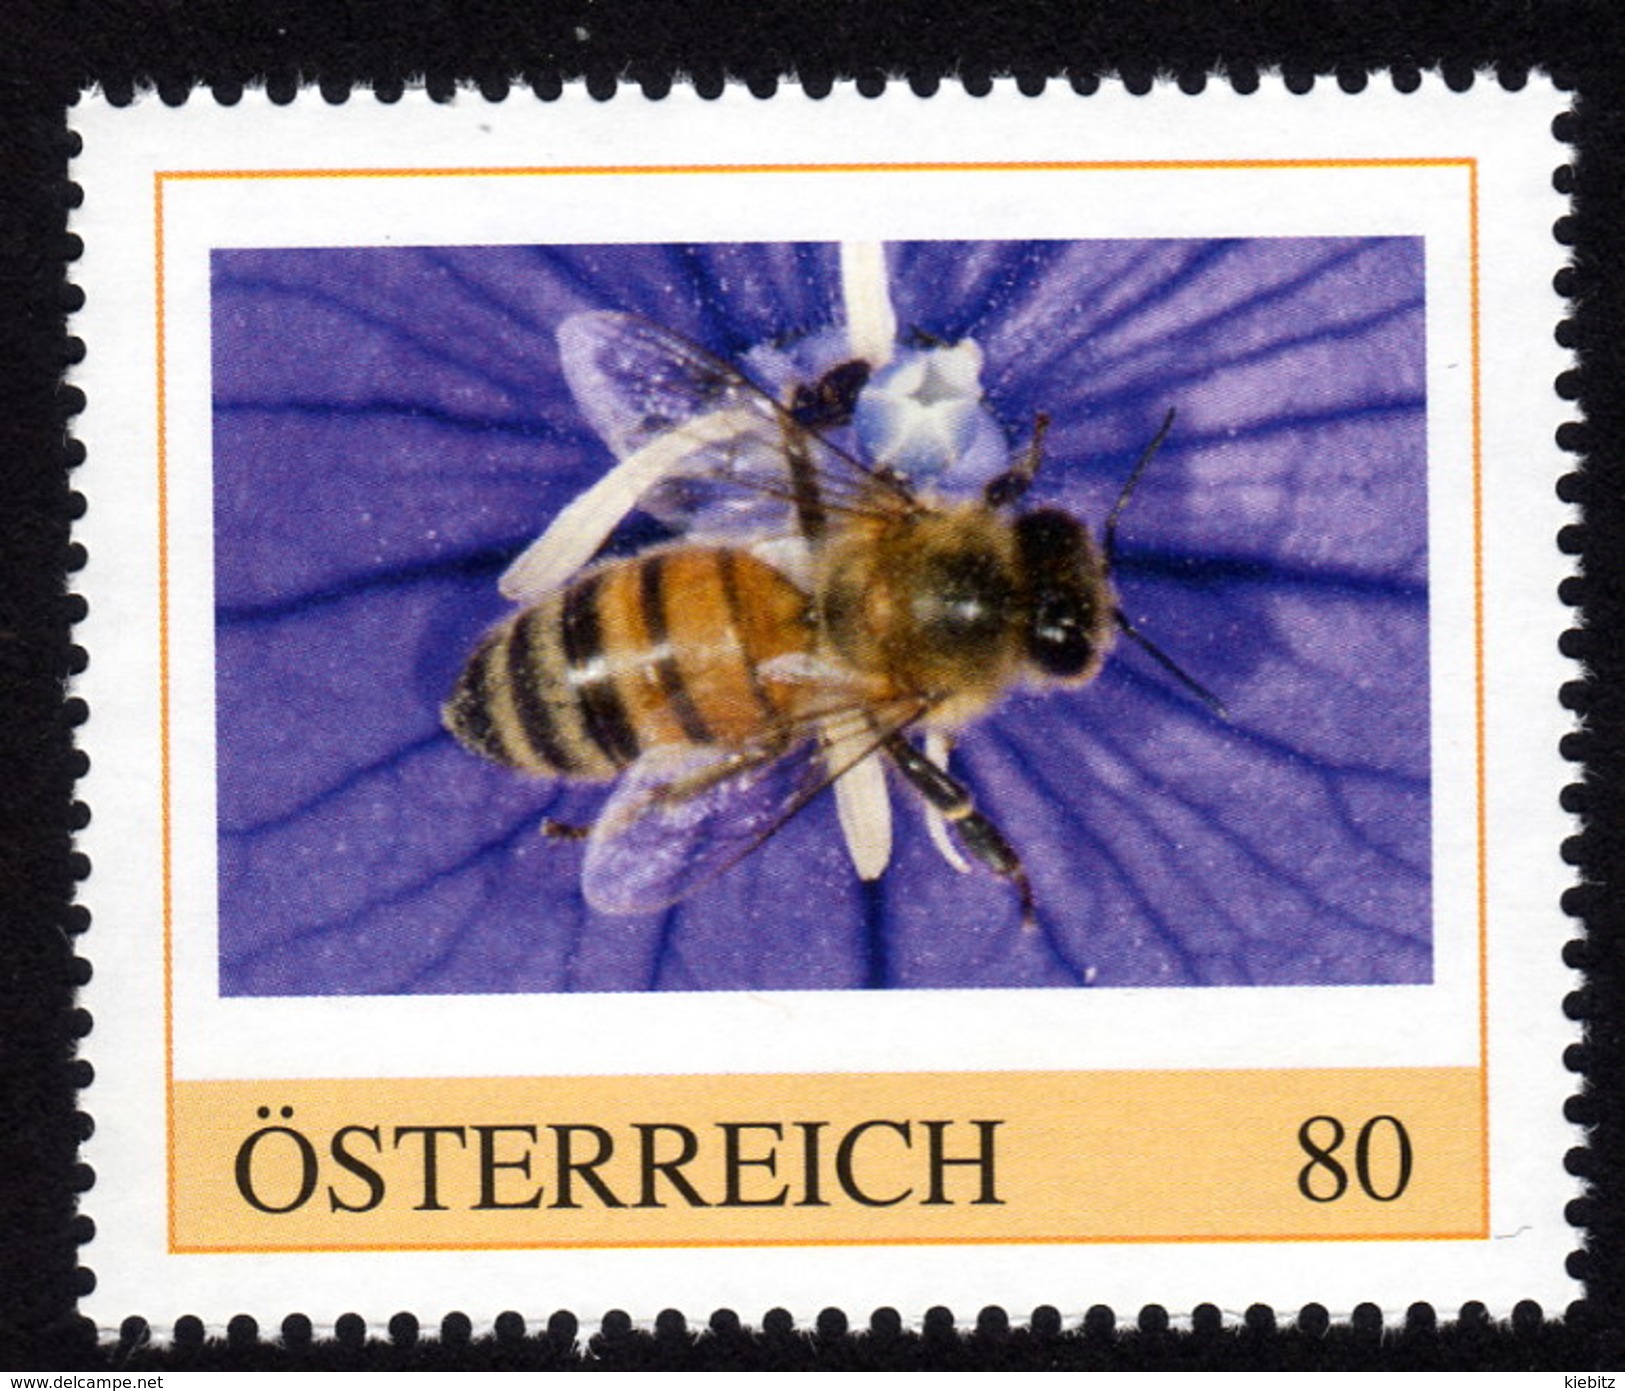 ÖSTERREICH 2015 ** Biene, Honigbiene, Honeybee - PM Personalized Stamp MNH - Api